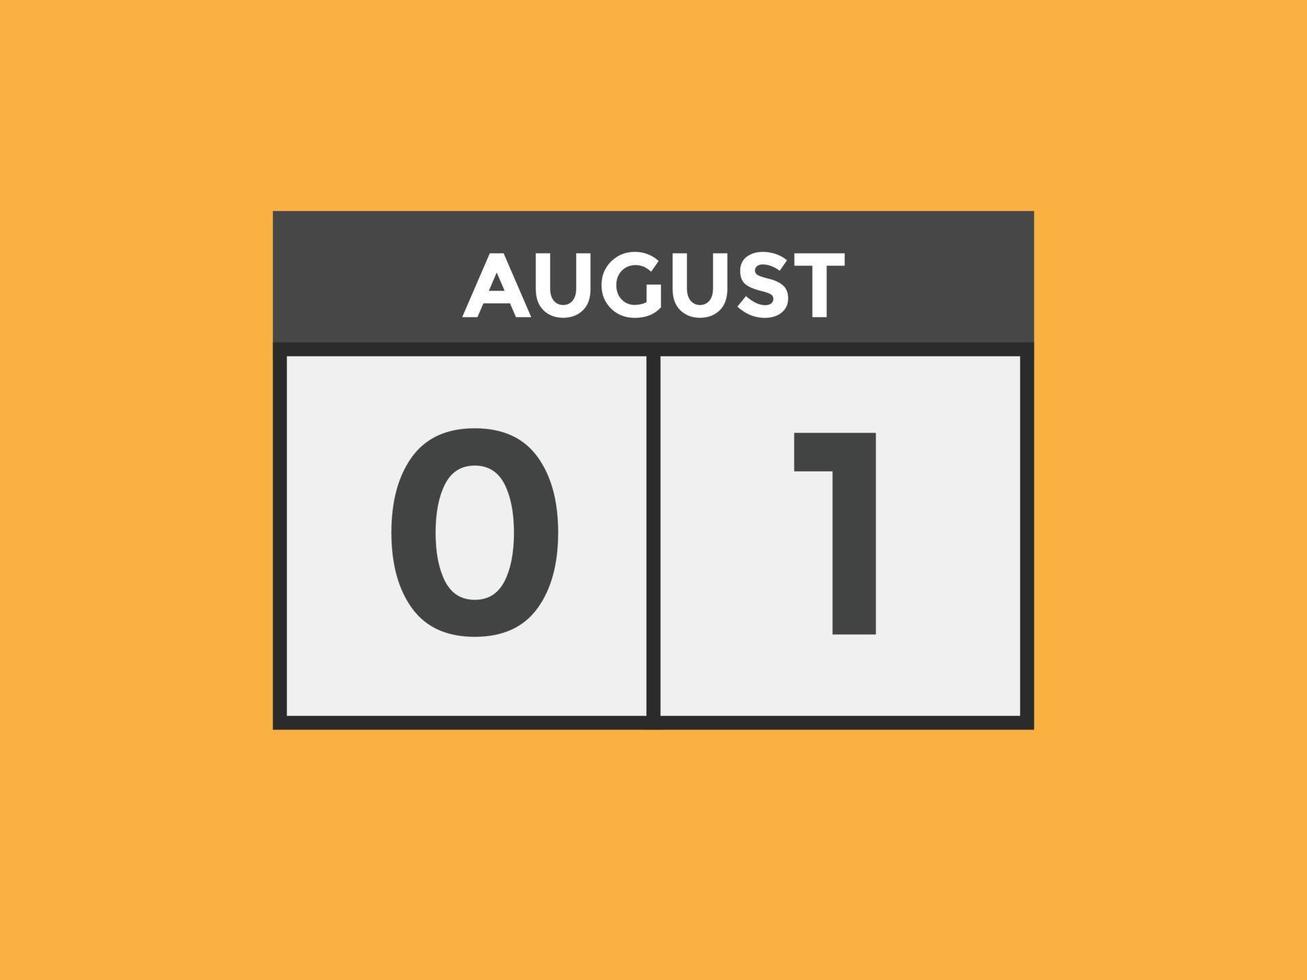 lembrete de calendário de 1 de agosto. 1º de agosto modelo de ícone de calendário diário. calendário 1º de agosto modelo de design de ícone. ilustração vetorial vetor